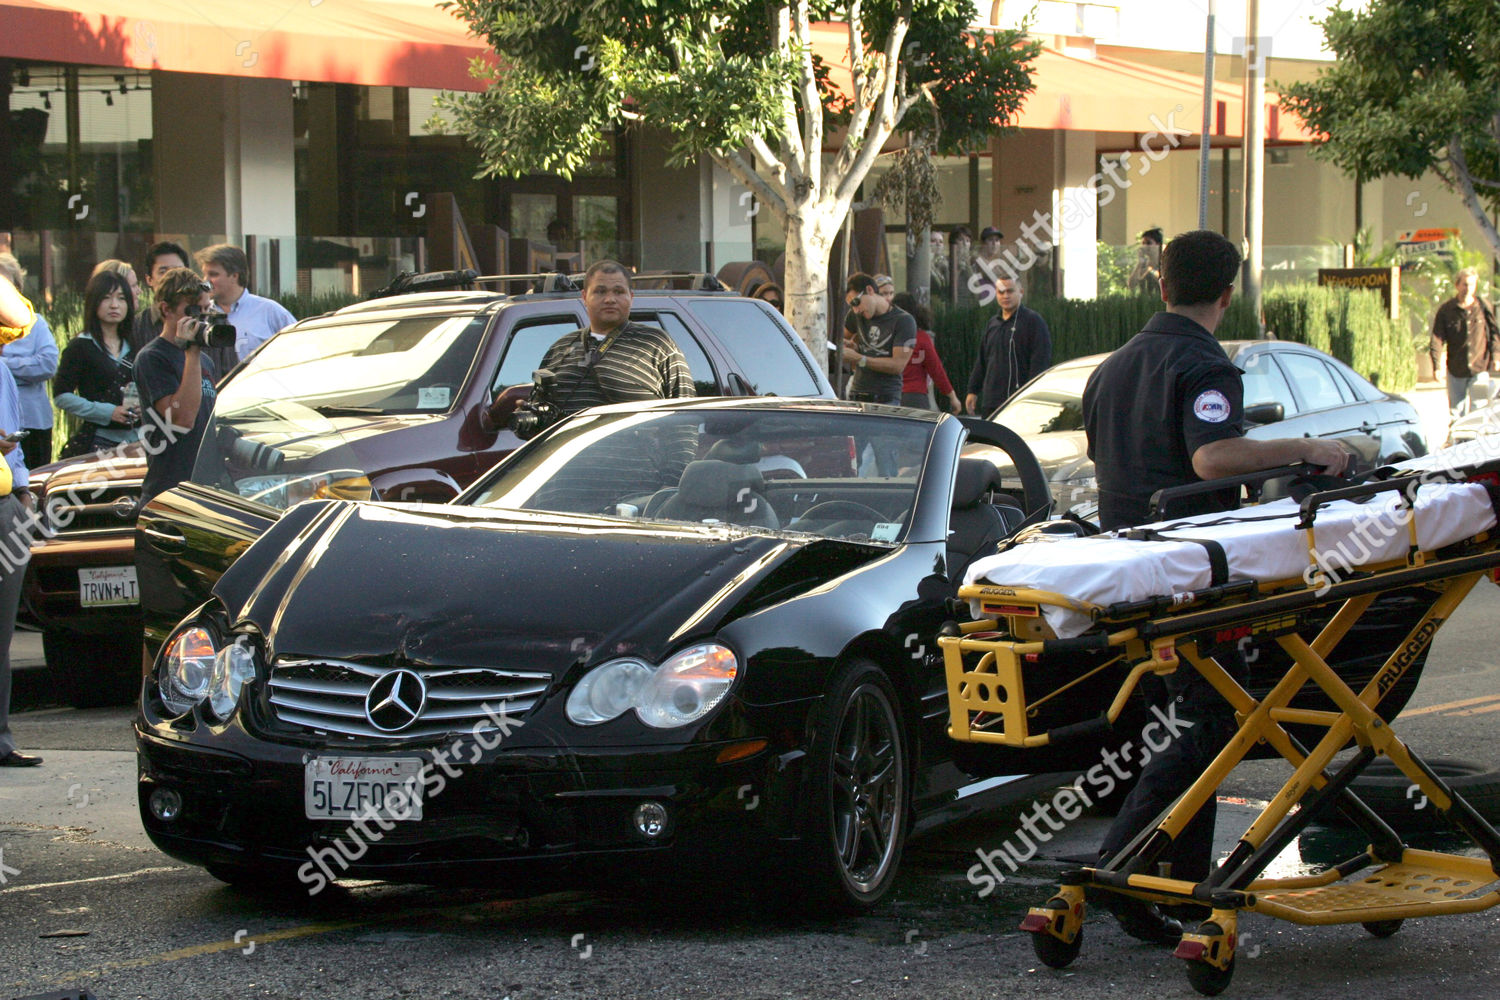  Lindsay Lohans car crash 